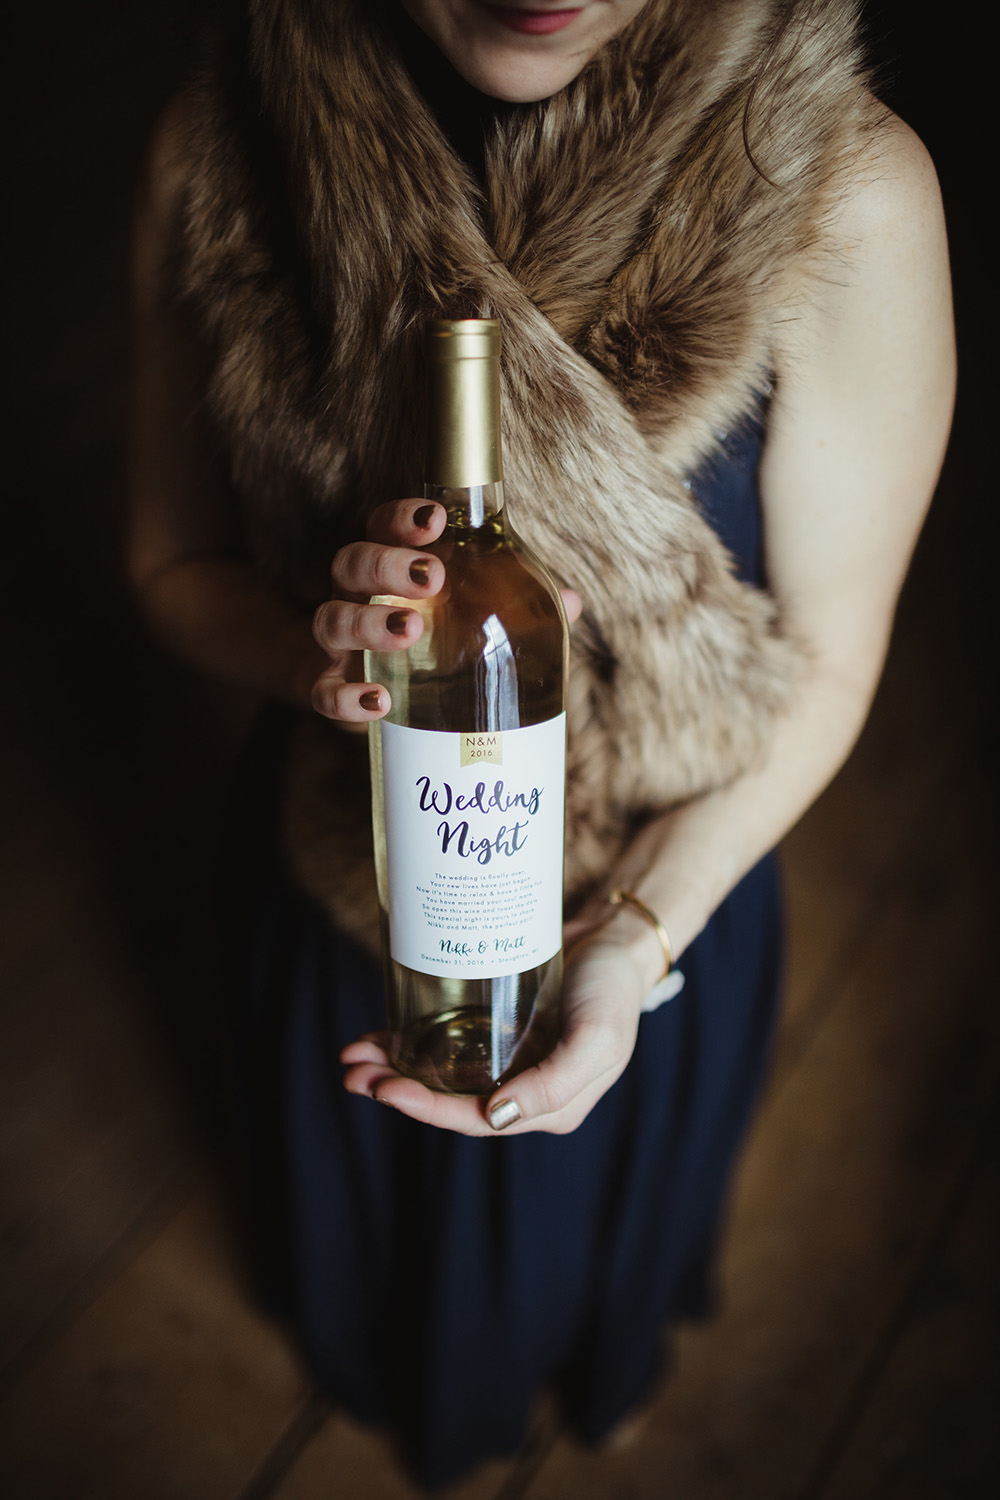 wedding wine winery bottle label ideas